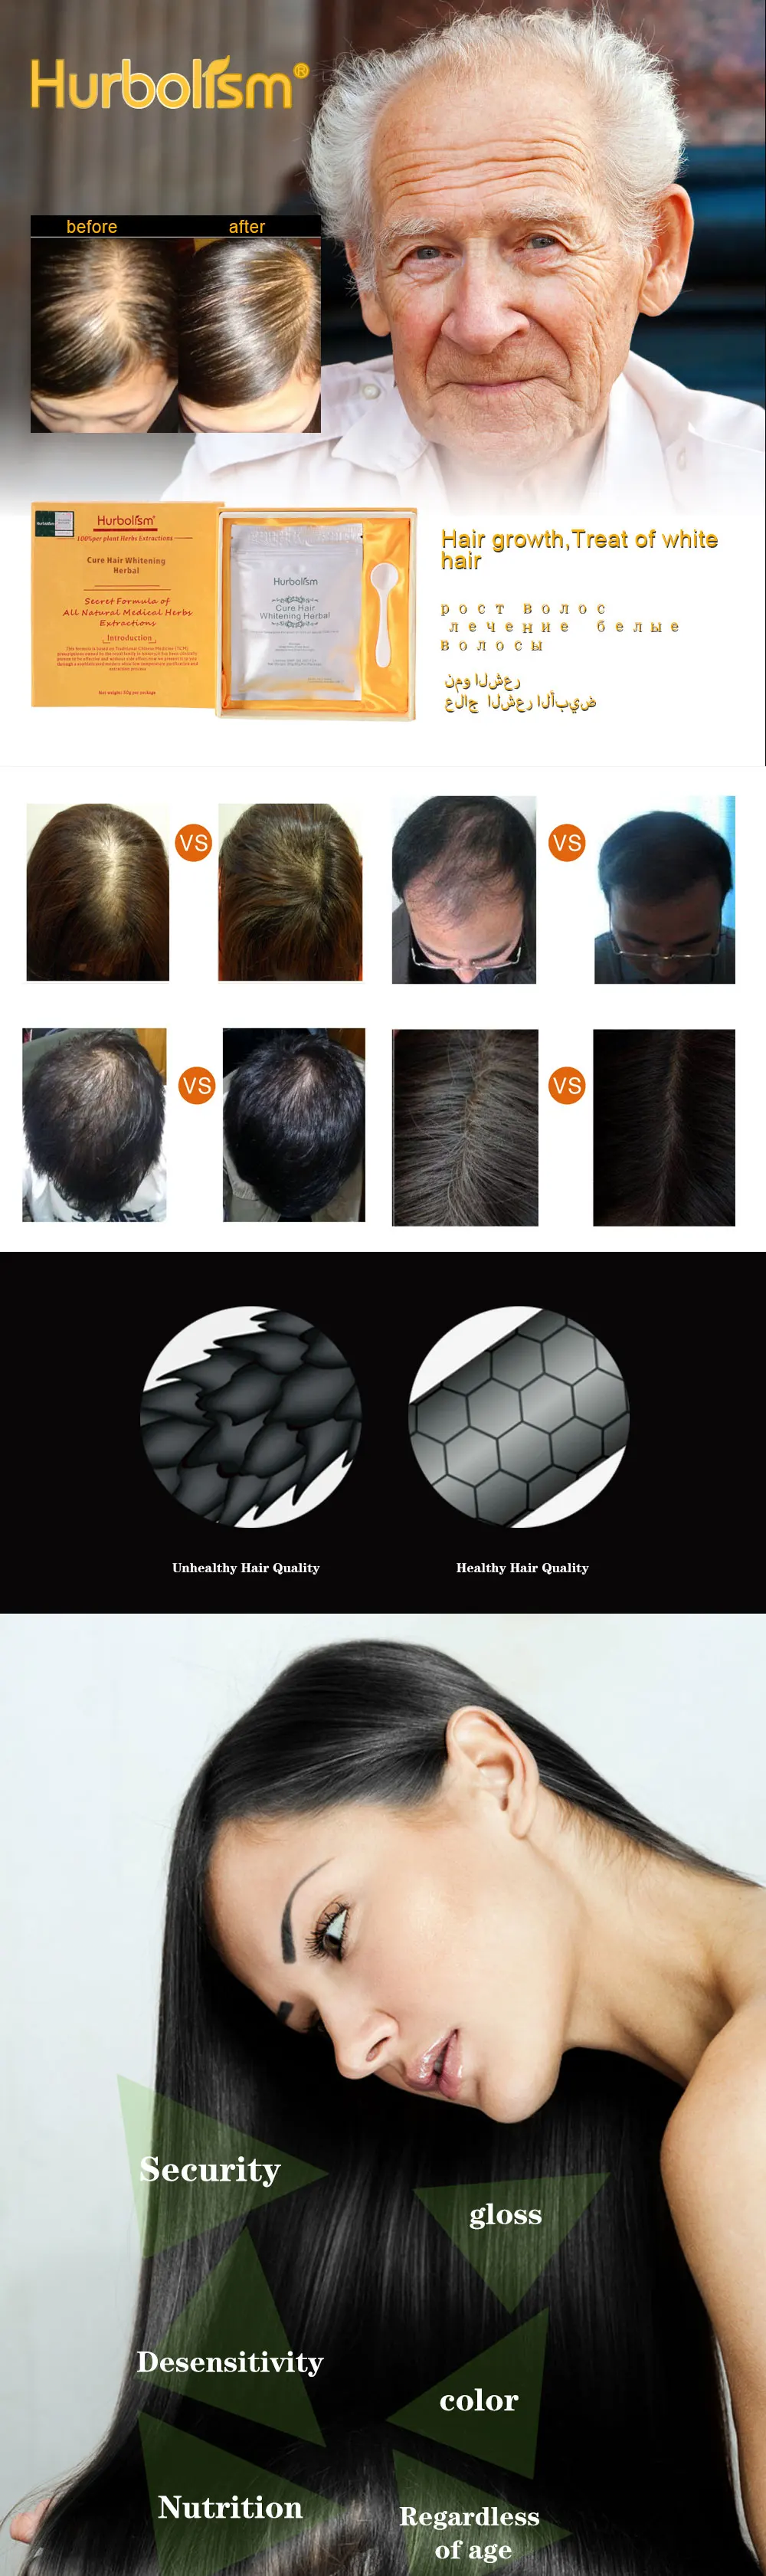 Hurbolism травяной порошок для чистого отбеливания волос и предотвращения выпадения, вернуть цвет волос и питать качество волос